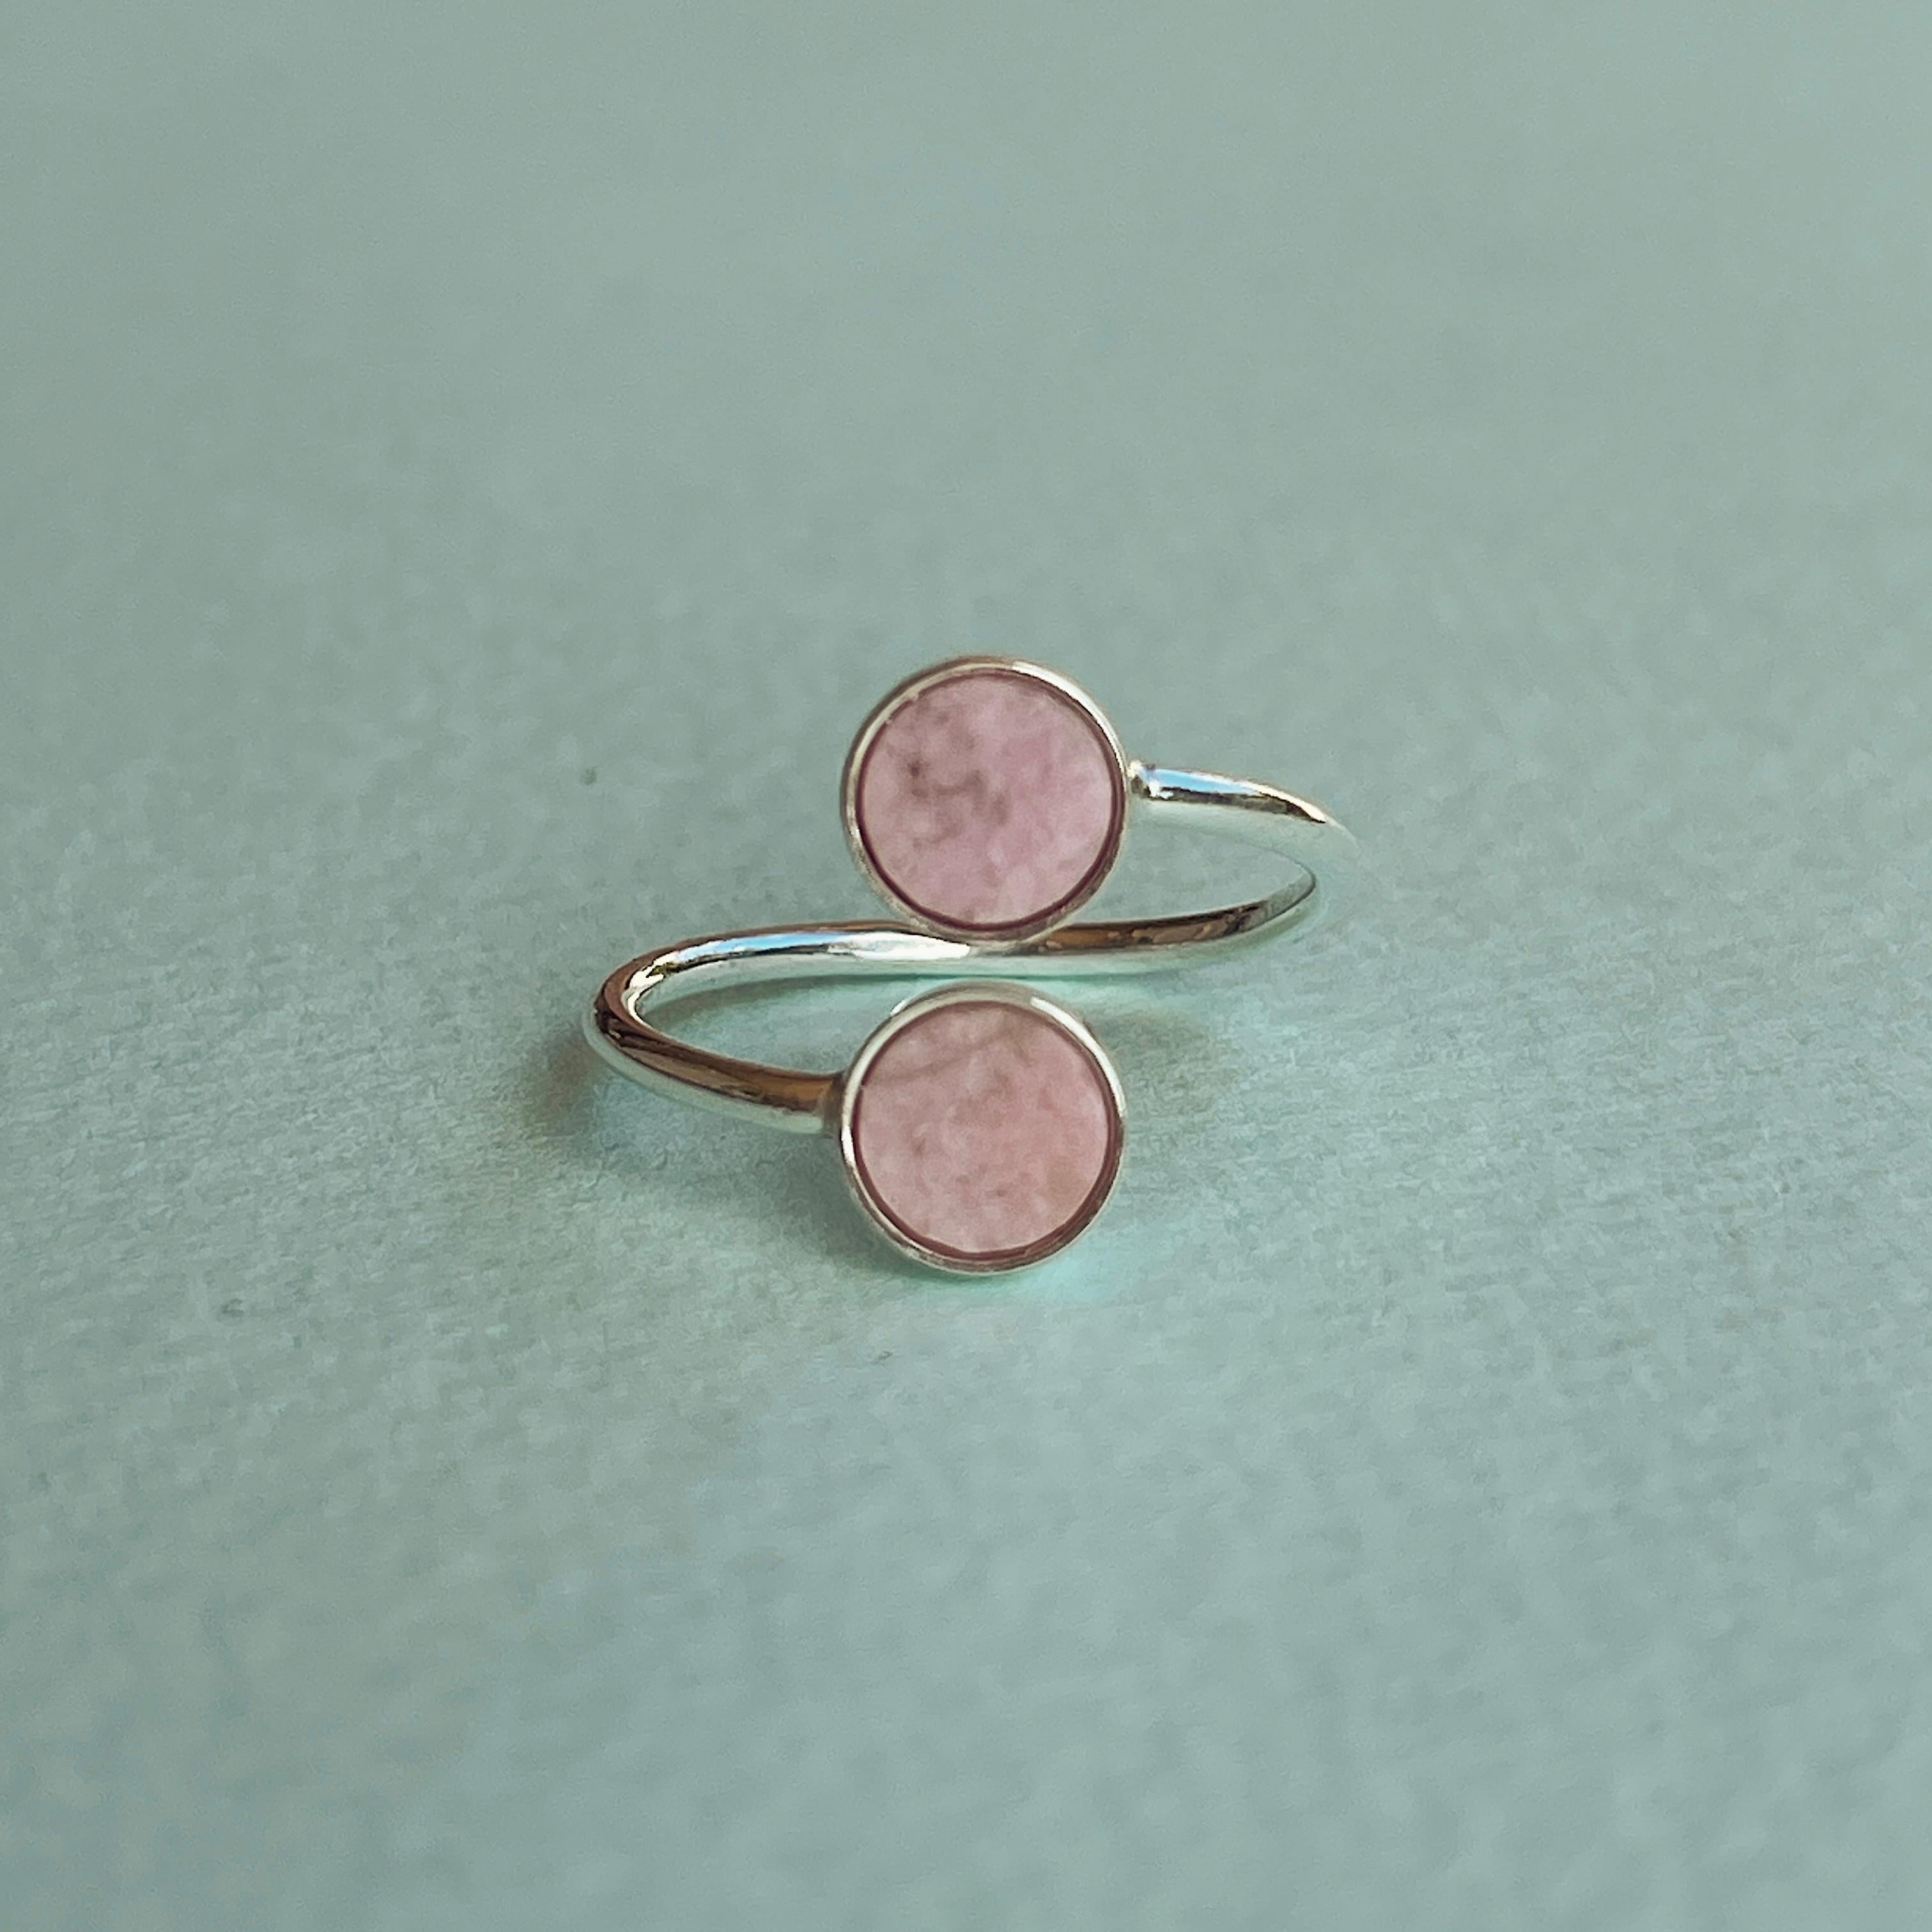 Erhöhen Sie Ihren Stil mit unserem Ring aus Sterlingsilber mit atemberaubenden Rodingit-Steinen. Dieser verstellbare Ring bietet sowohl zeitlose Eleganz als auch individuellen Komfort für ein wirklich einzigartiges Accessoire.
Der Ring ist aus